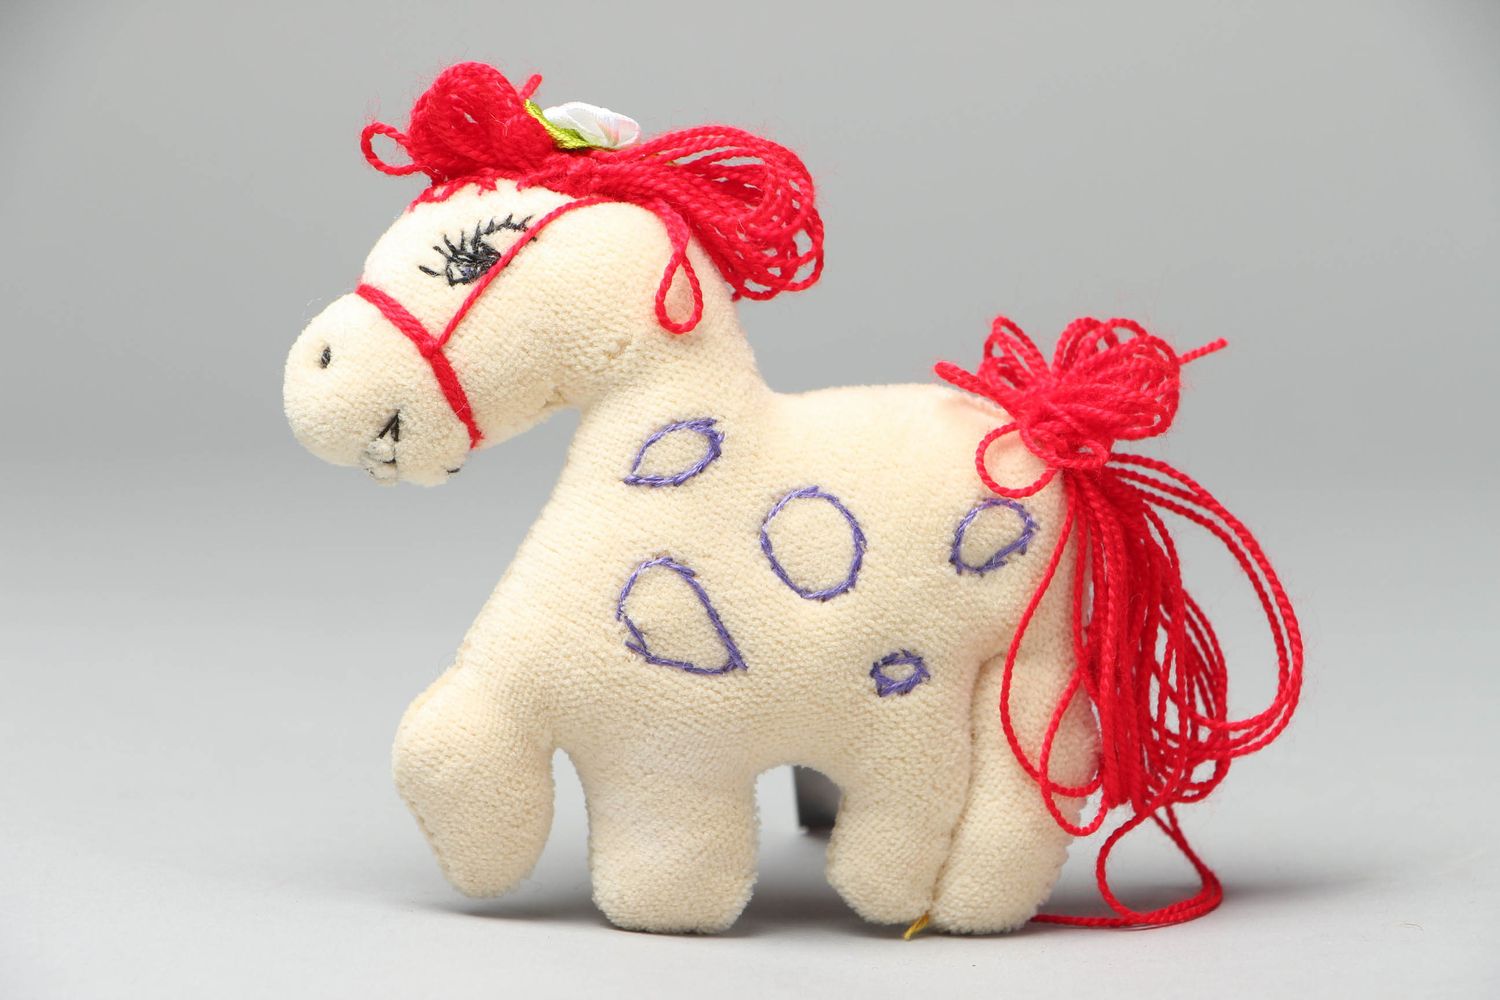 Textil Spielzeug von Handarbeit Pferd foto 3